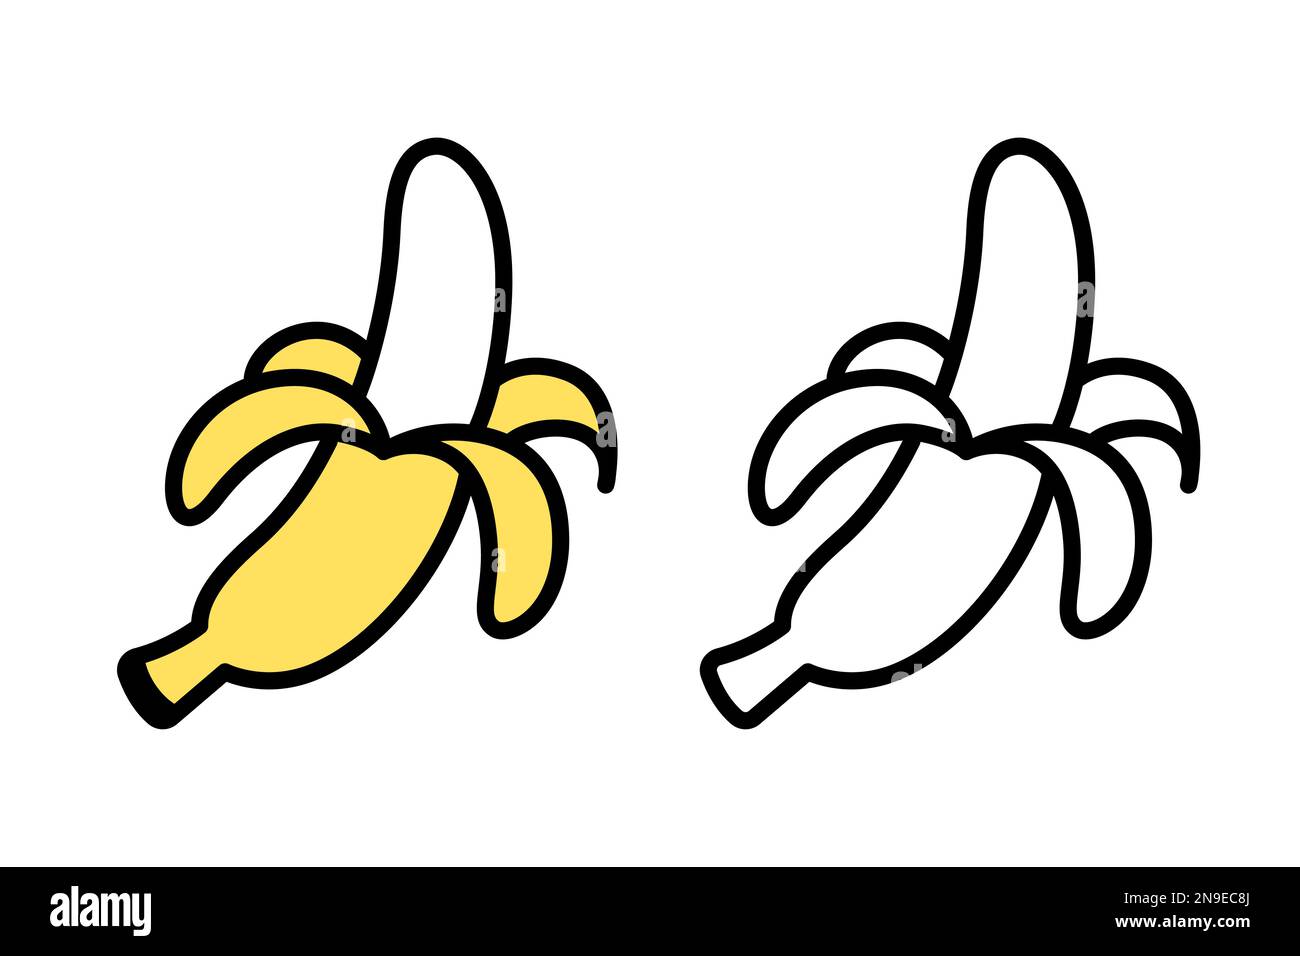 Geschälte Banane, handgezeichnetes Kritzelsymbol. Schwarzweiß- und Farbzeichen. Einfache Zeichnung, Vektor-Clip-Art-Illustration. Stock Vektor